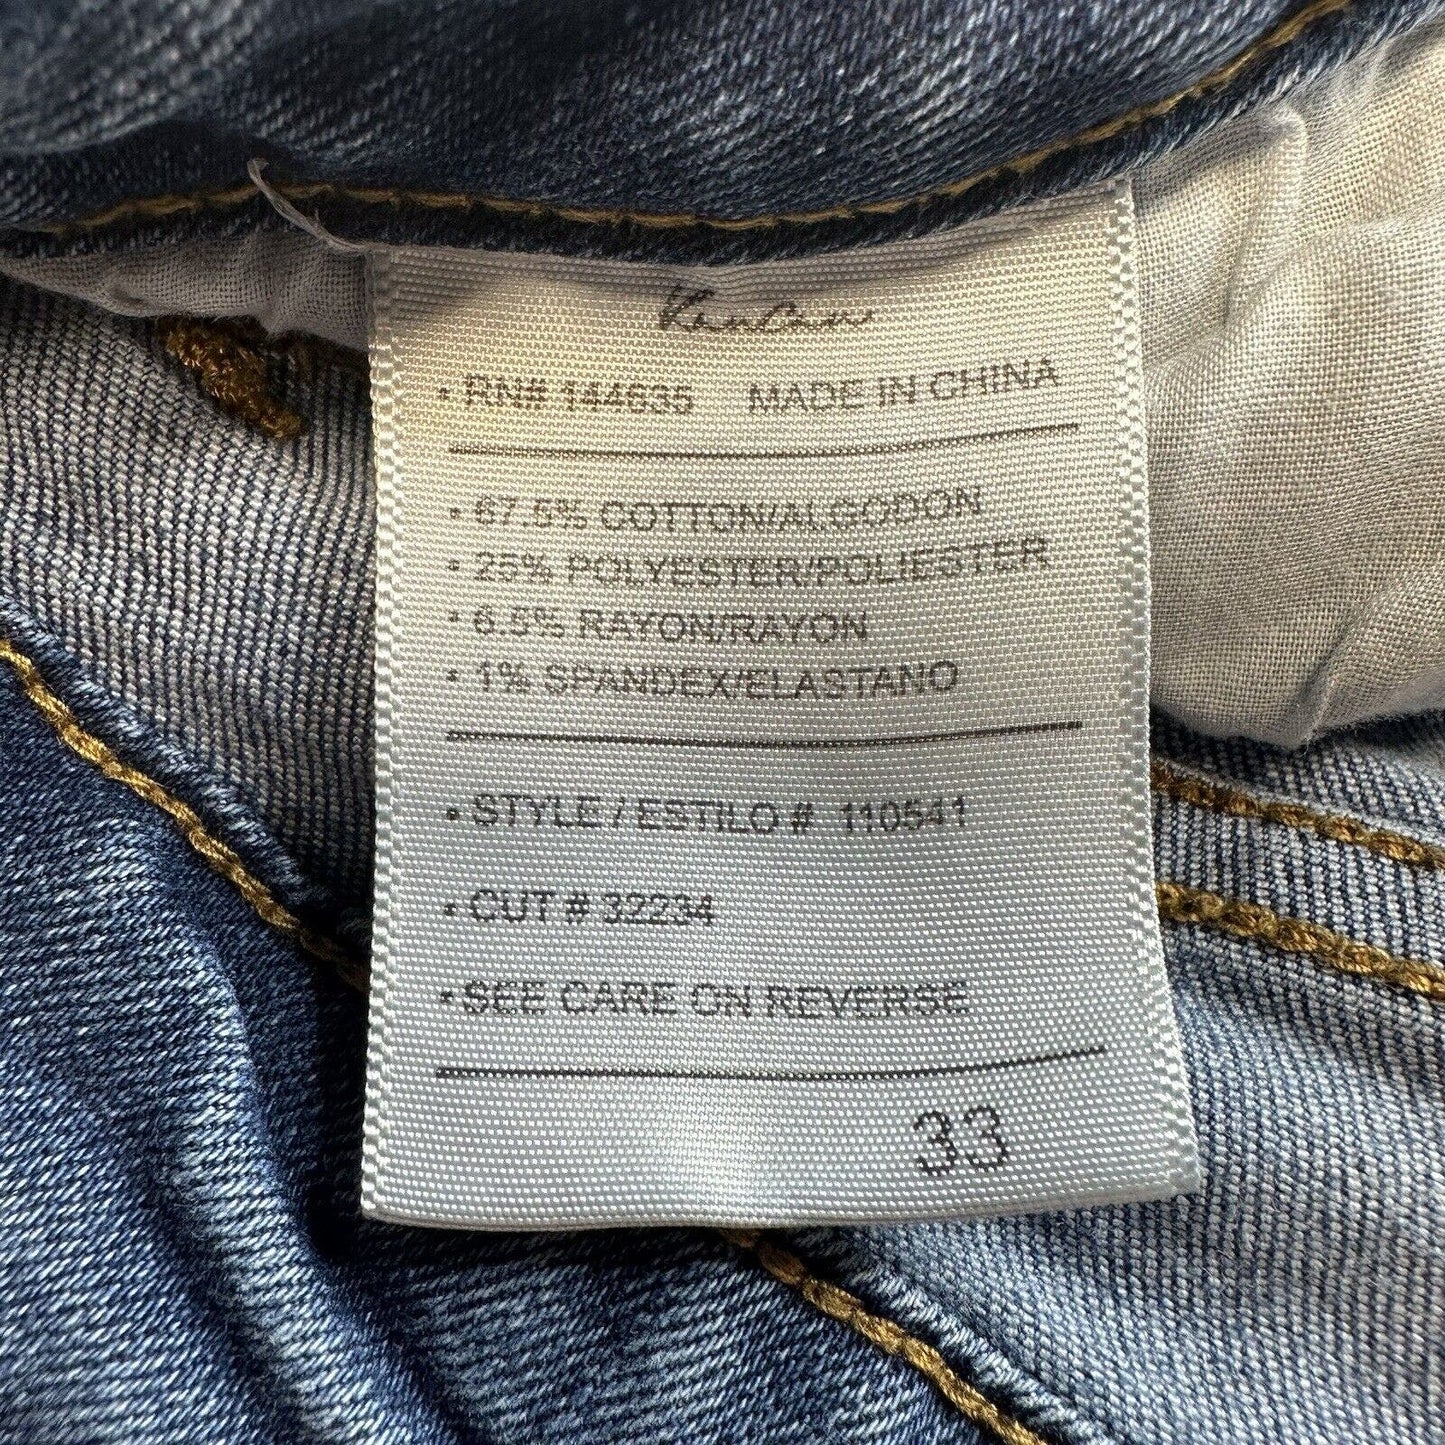 Kancan Jeans Womens 33 Bootcut Blue Stretch Denim Medium Wash Western Cowboy